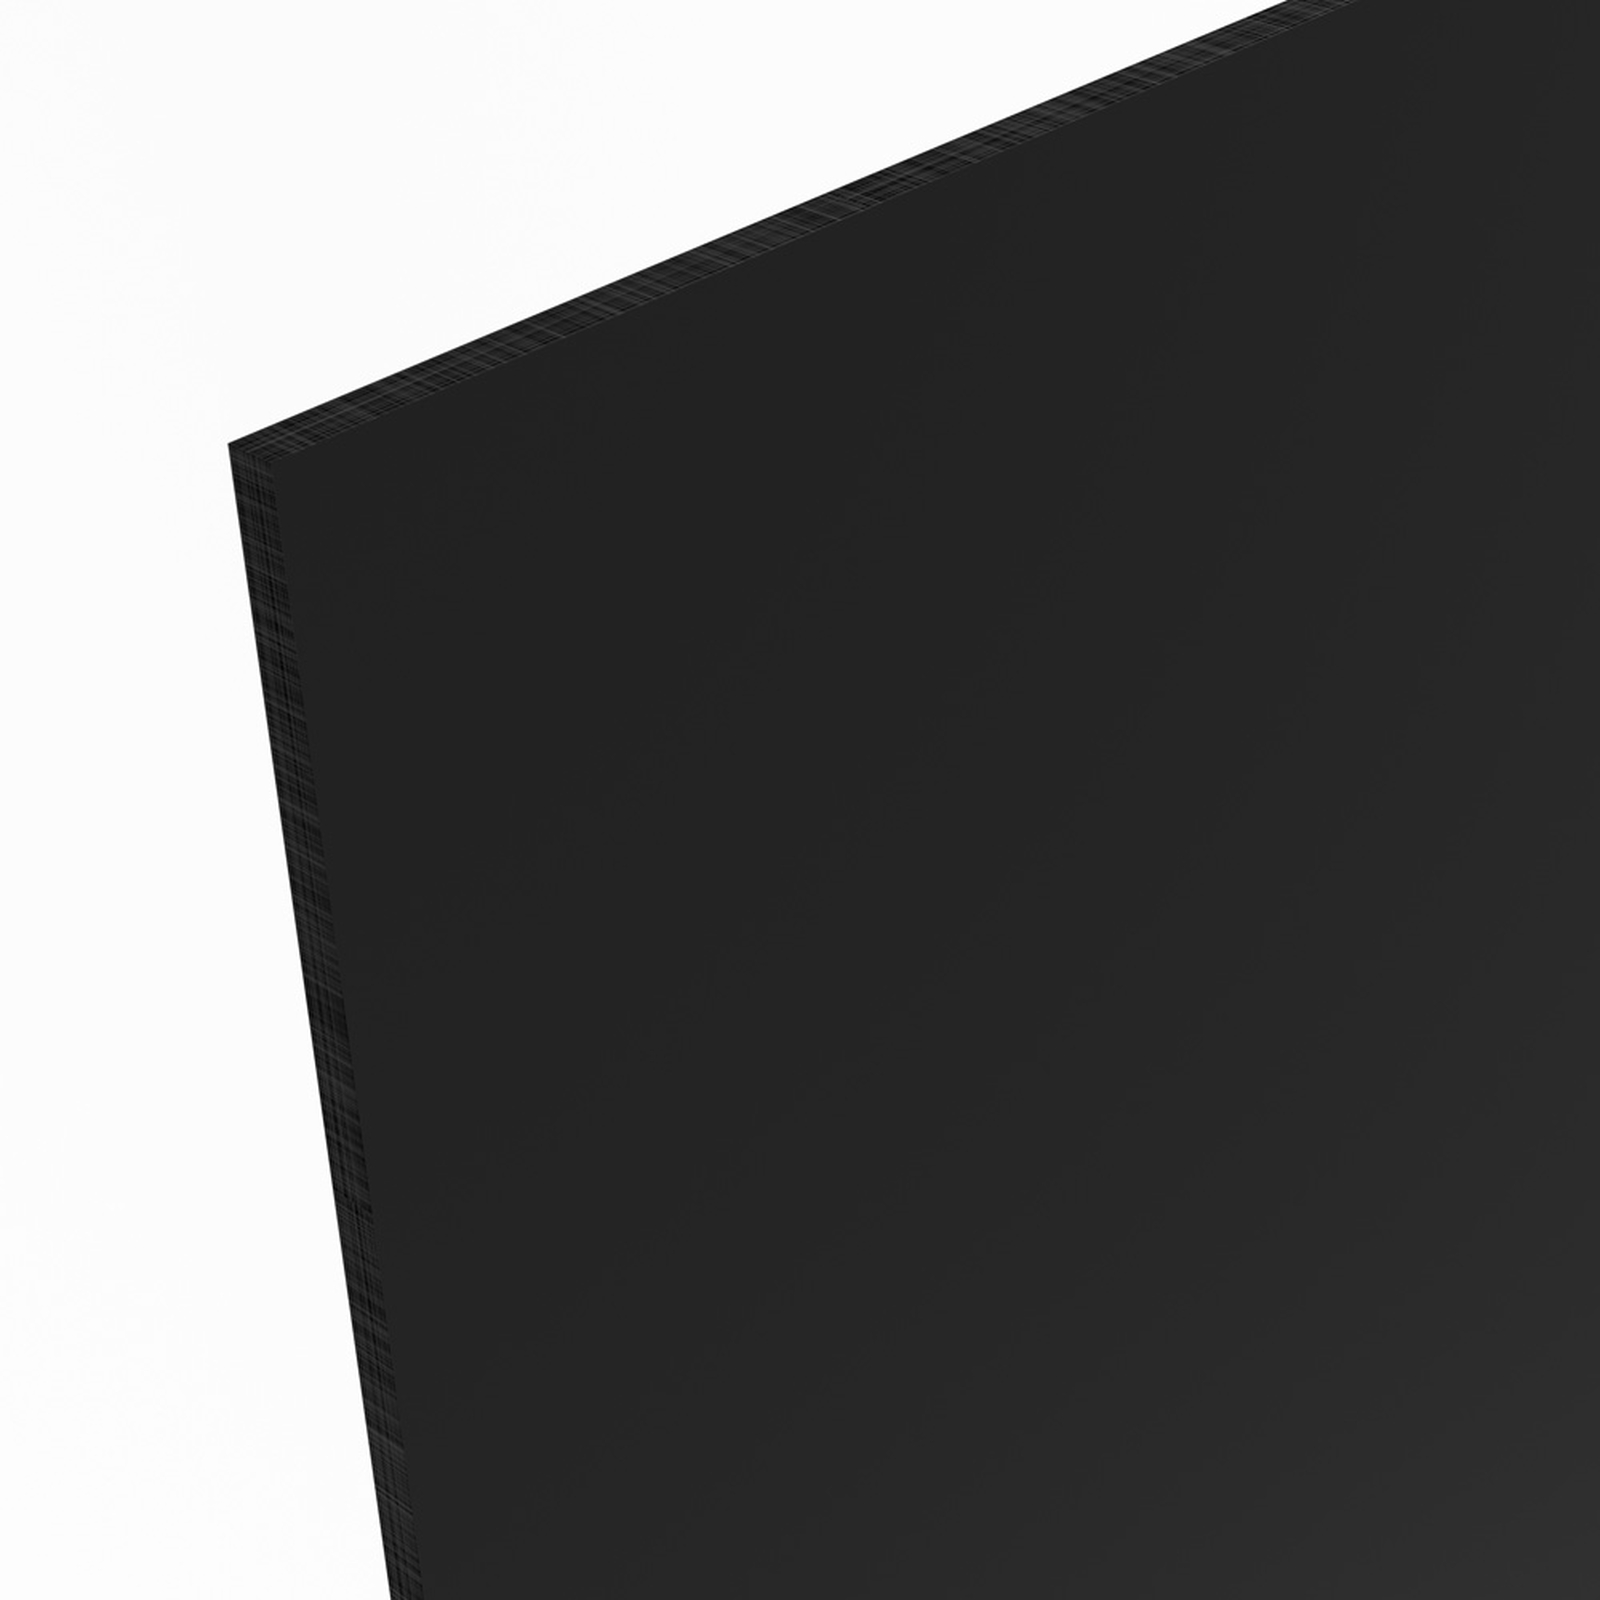 PLEXIGLAS® Acrylglas schwarz blickdicht 3mm Platte lichtundurchlässig 